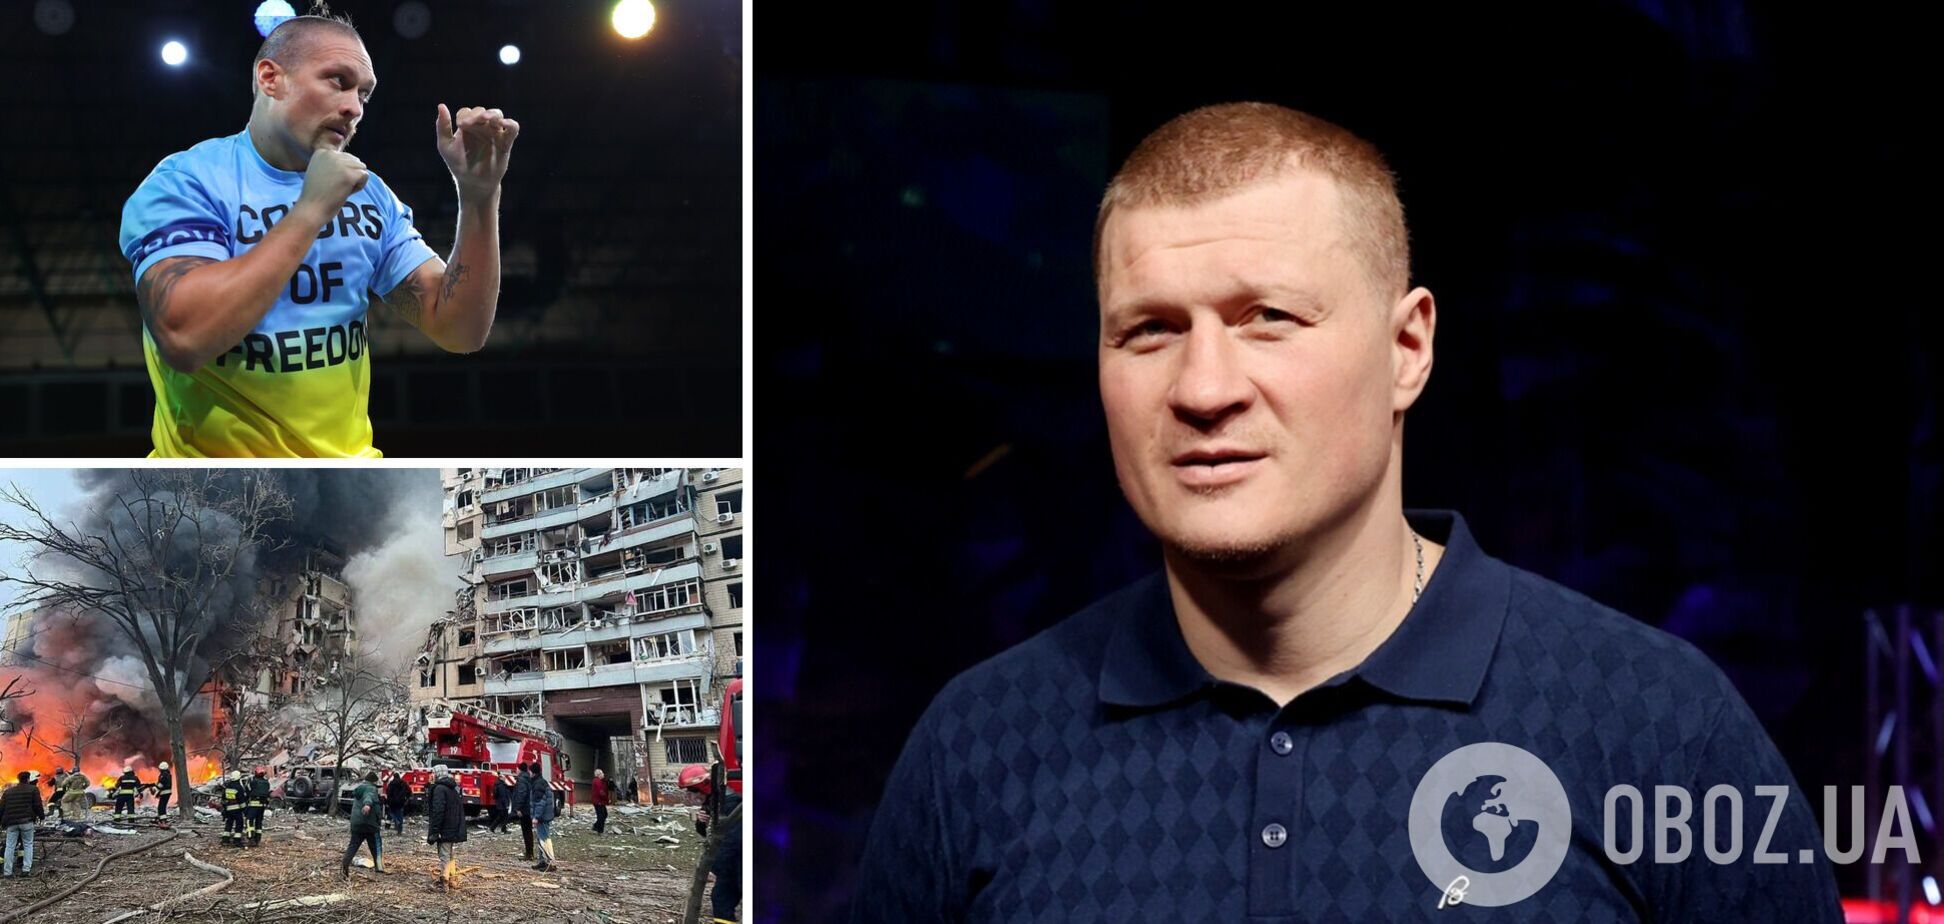 Поветкин рассказал, как 'не очень хорошо' пообщался с Усиком 'о Донецке, Луганске'